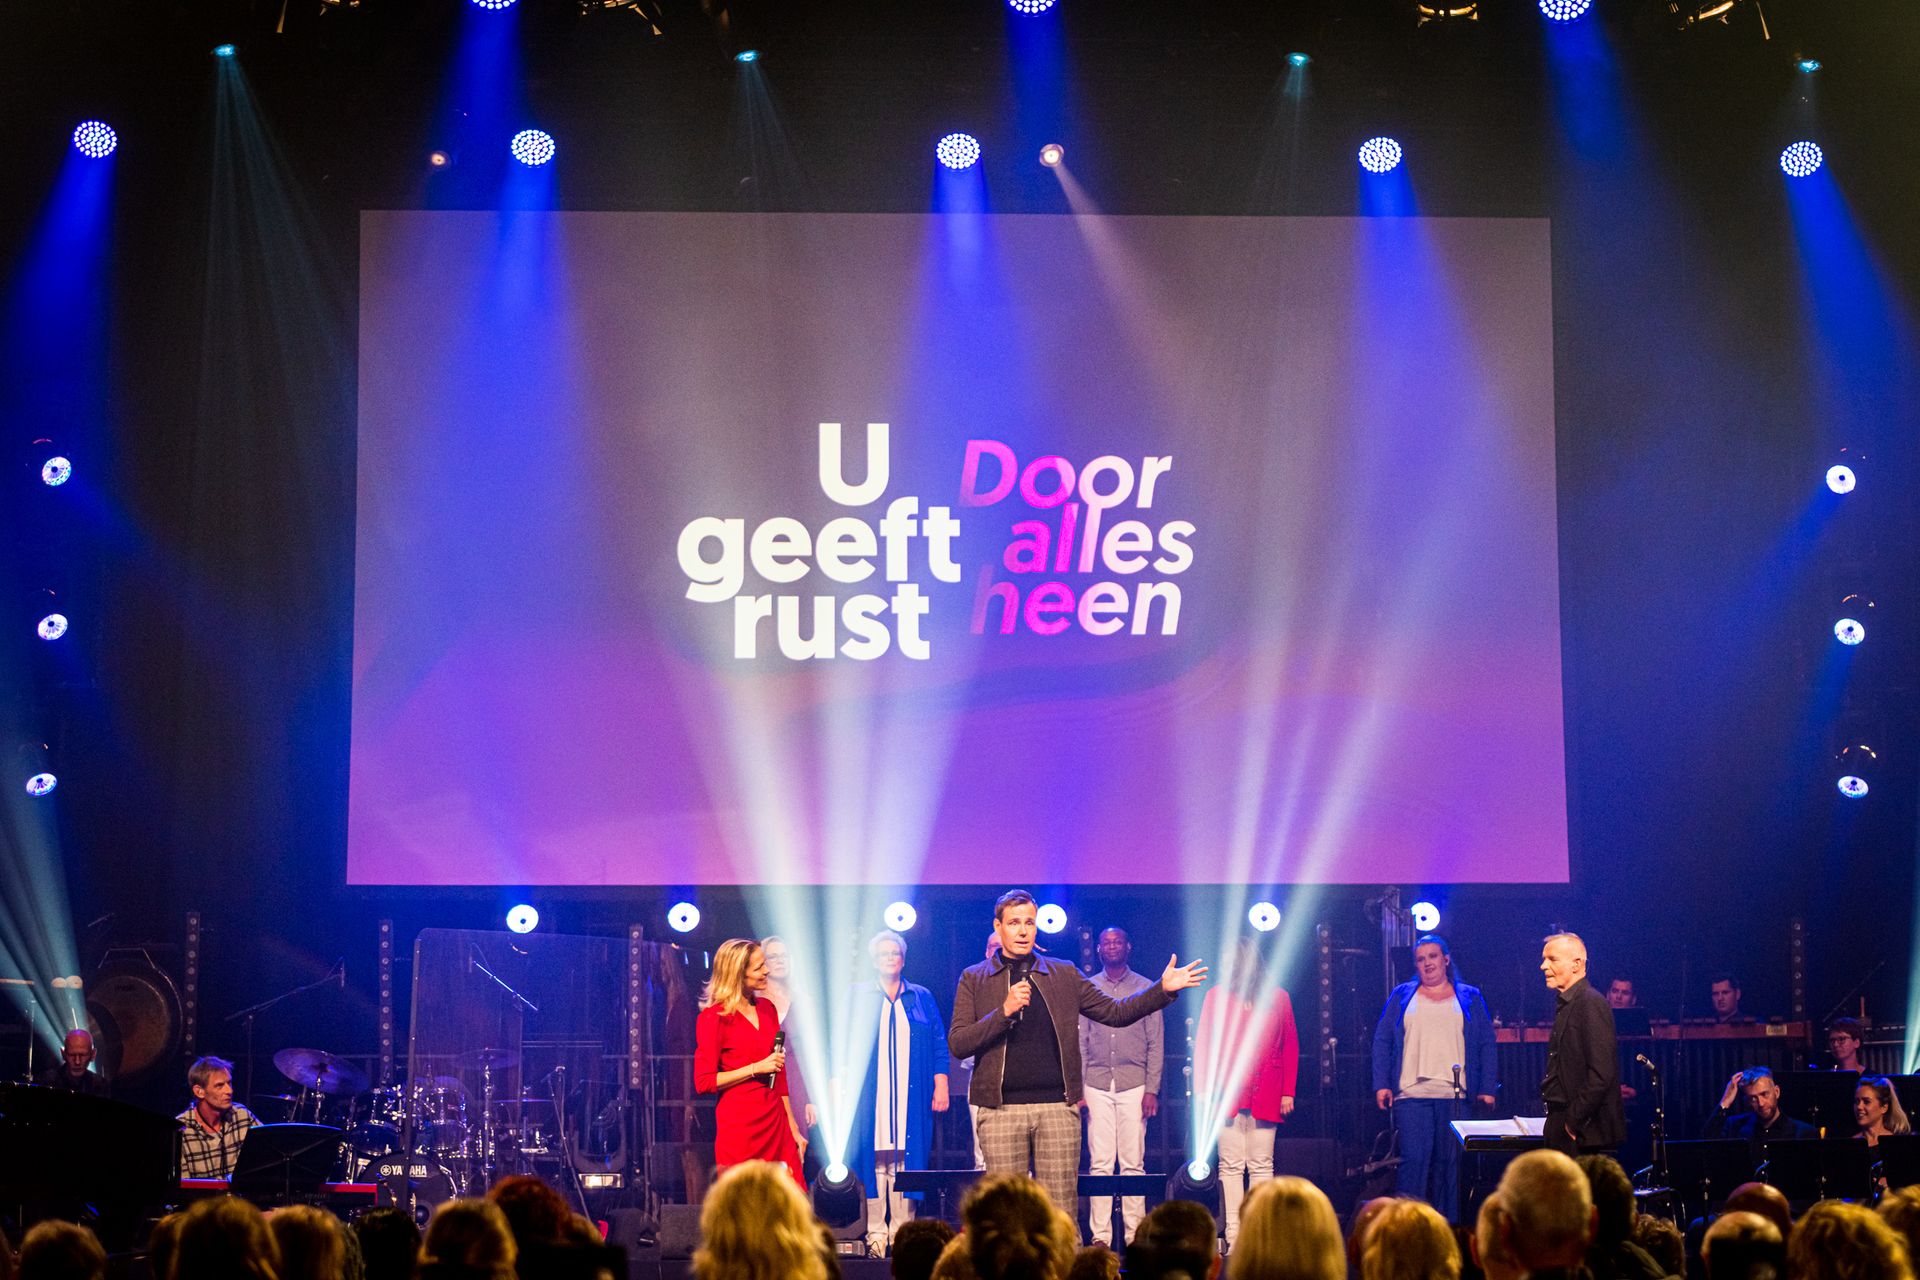 19e Nederland Zingt Dag: muzikaal feest over Gods rust door alles heen